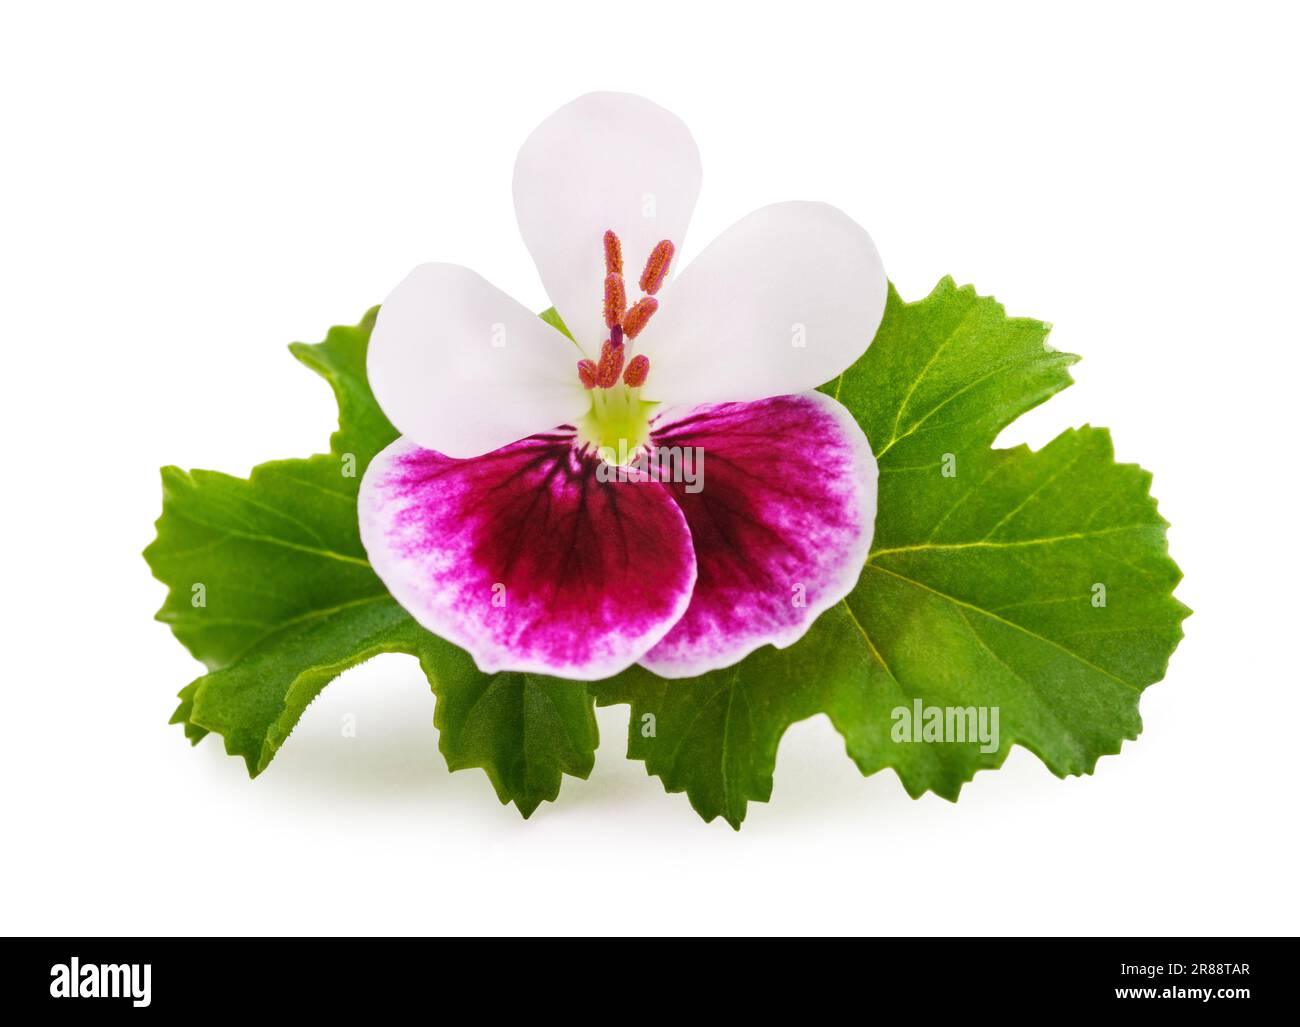 Geranium flower isolated on white background Stock Photo